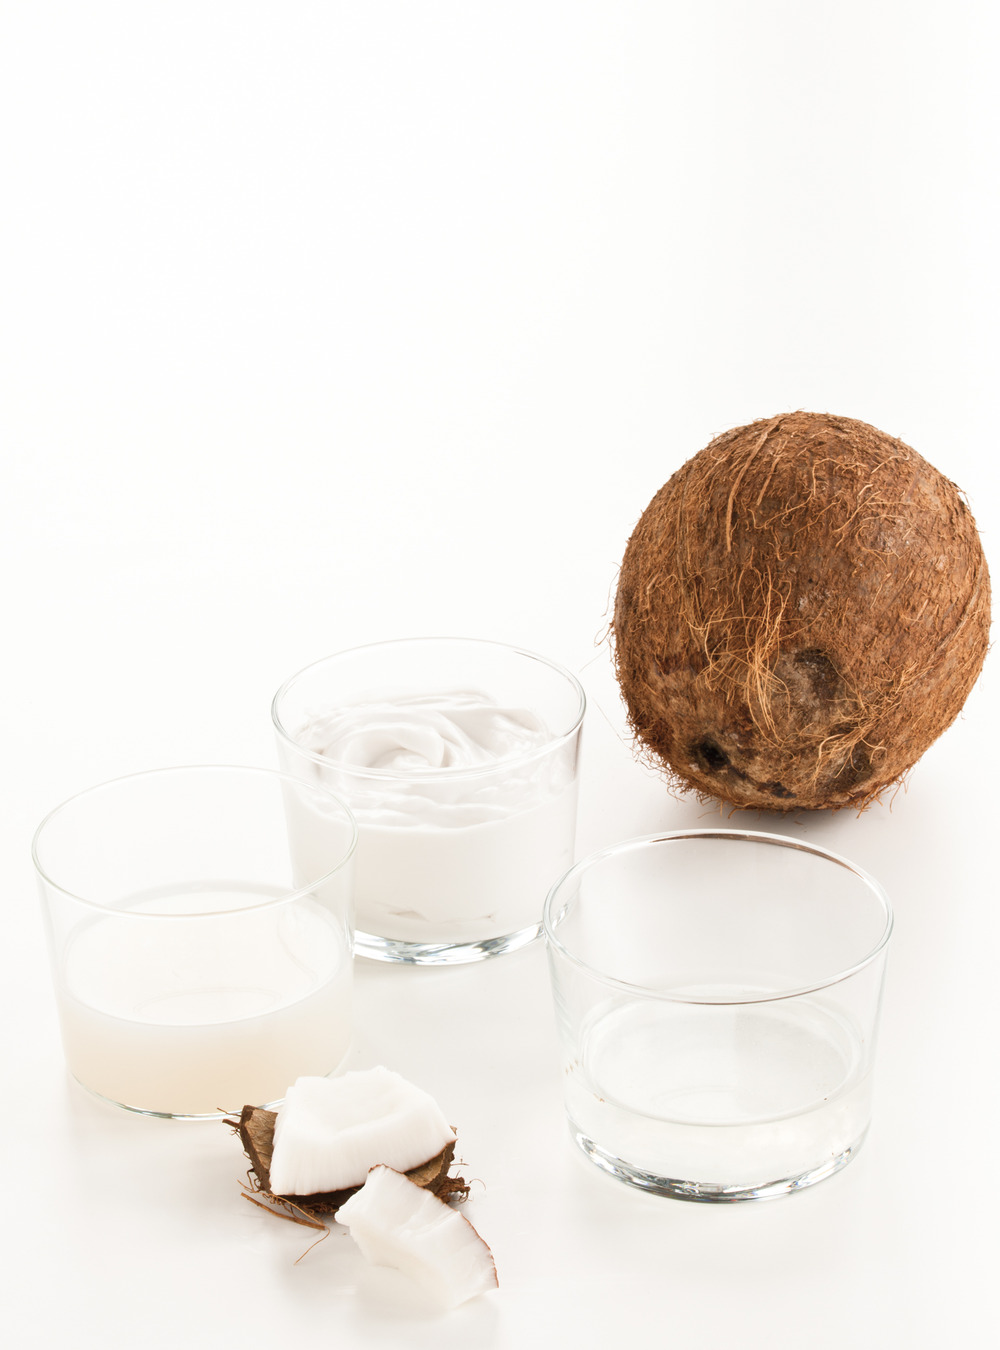 Pangasius au lait de coco 5 minutes | ricardo